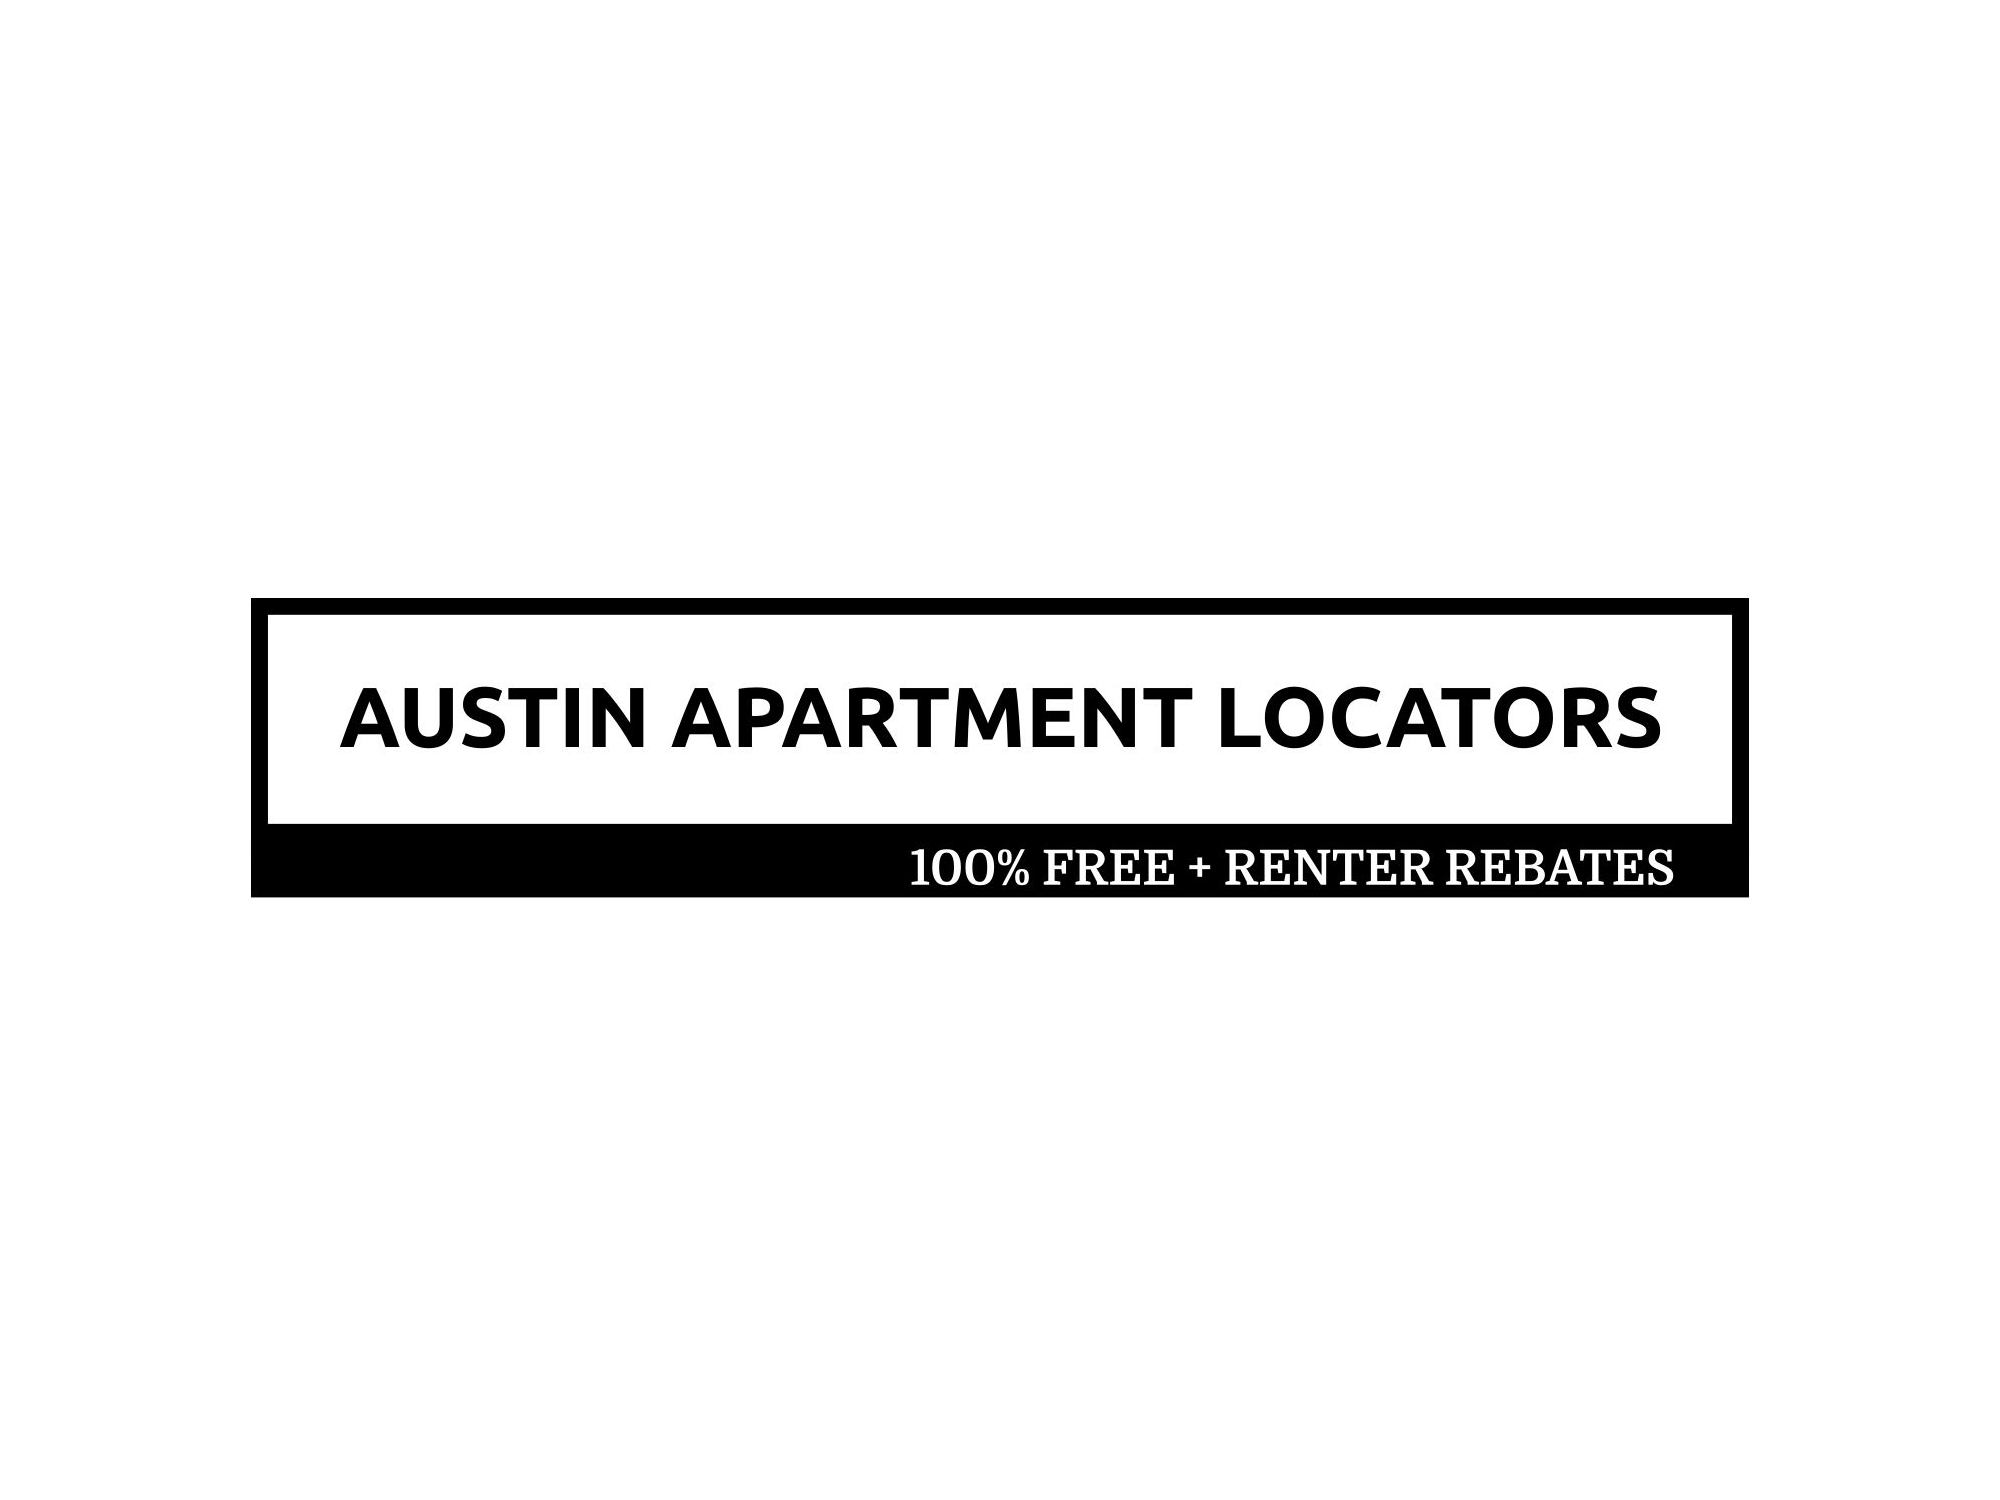 Business logo of Austin Apartment Locators